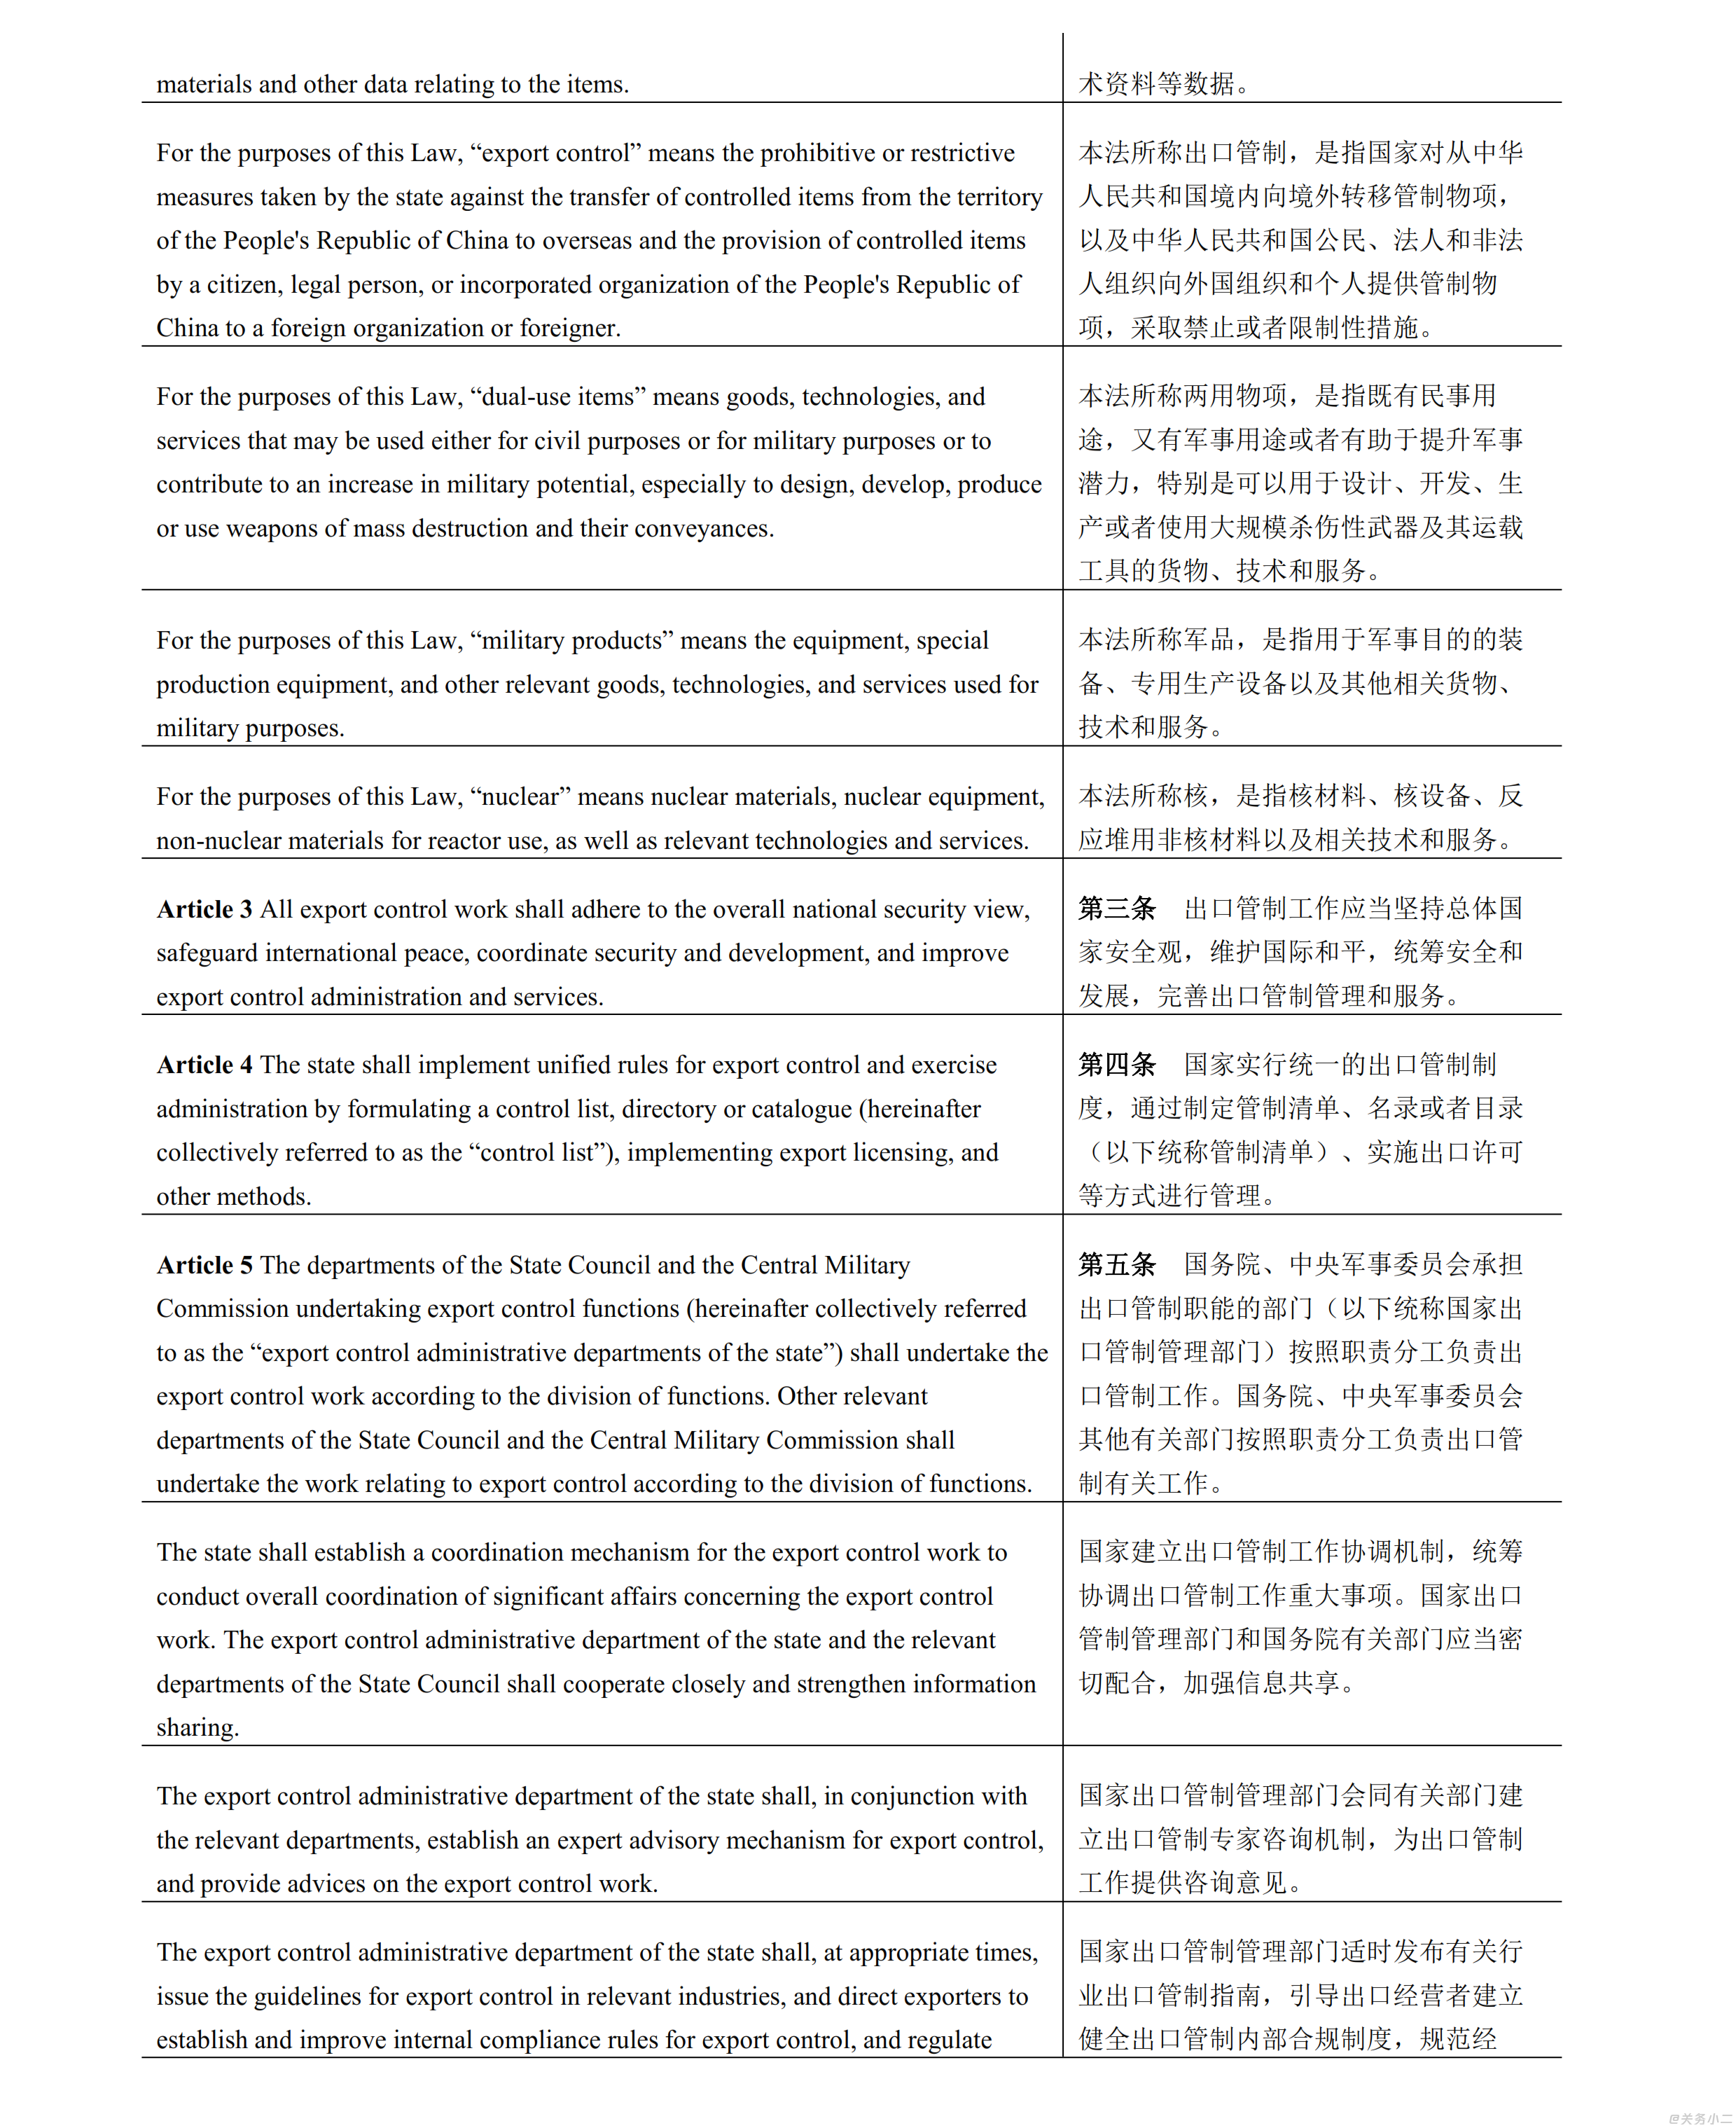 【无页眉】中华人民共和国出口管制法_002.png